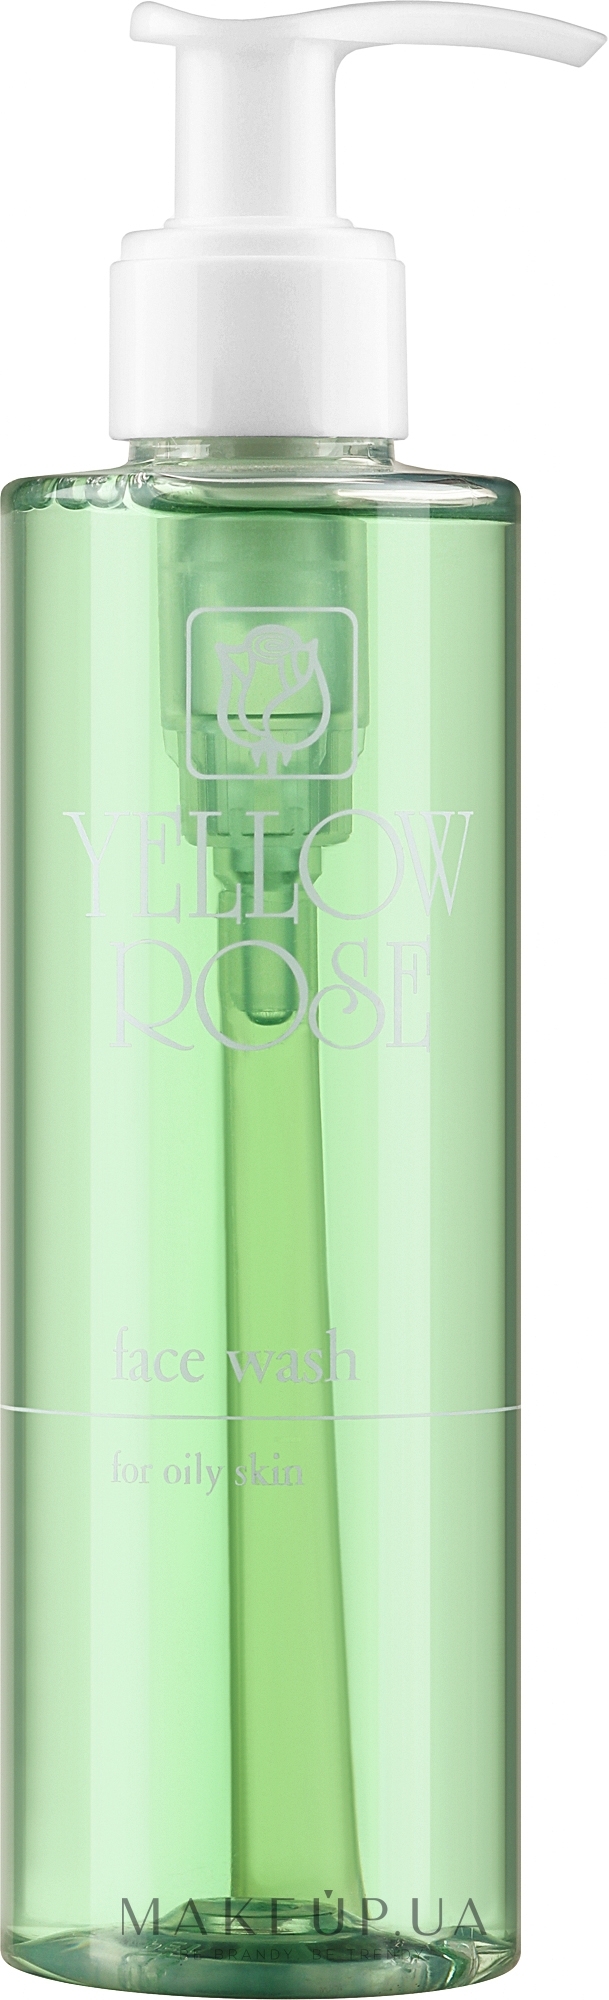 Очищающий гель для умывания с прополисом - Yellow Rose Face Wash For Oily Skin — фото 200ml